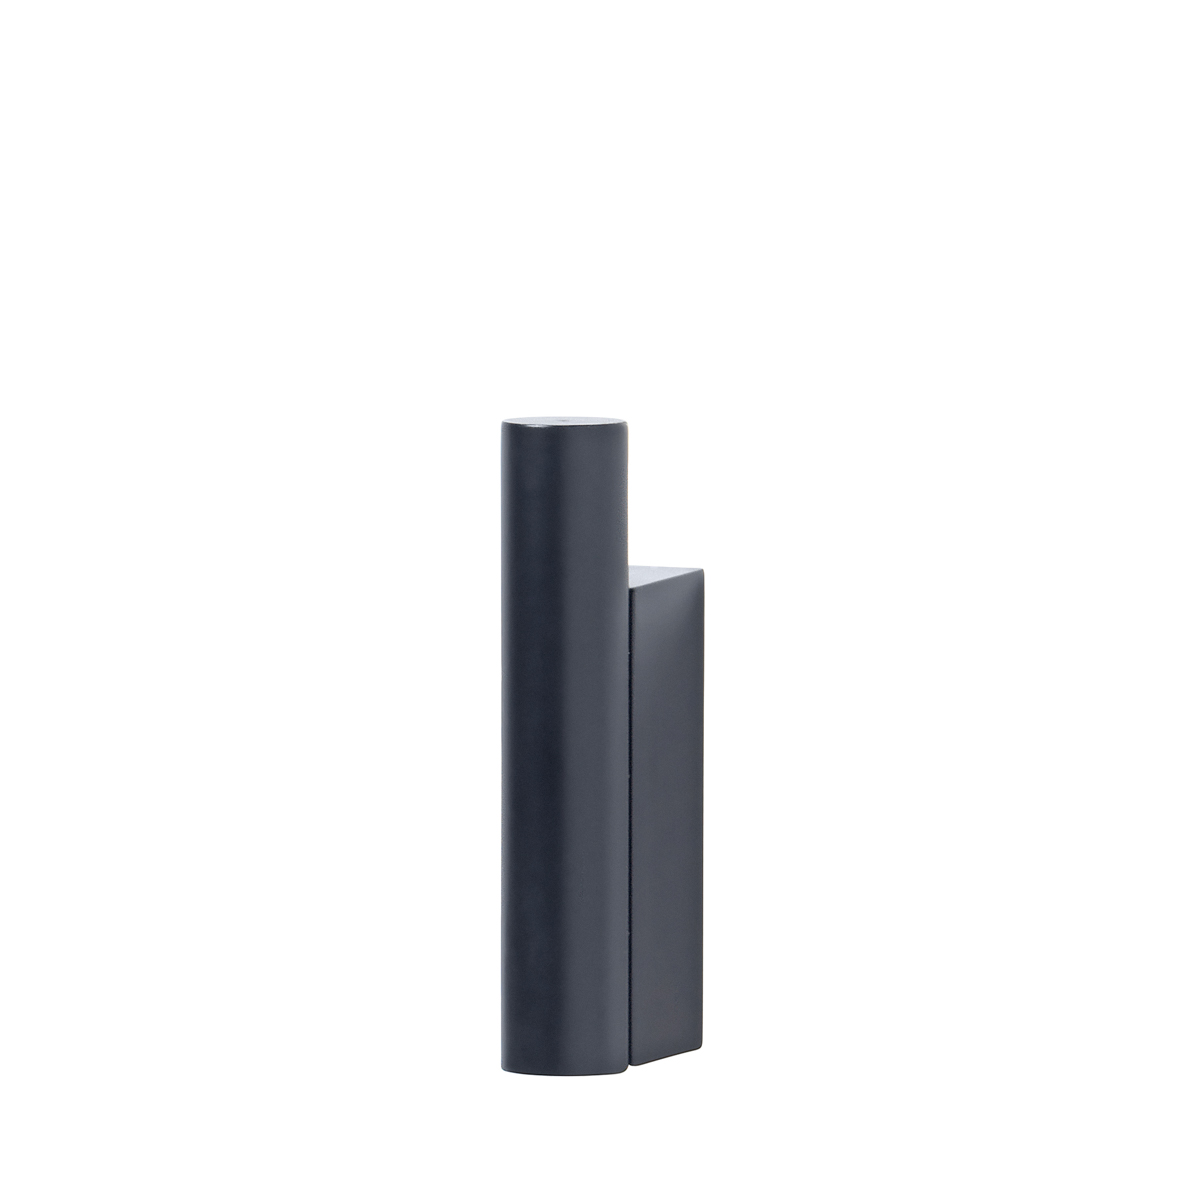 Wandhaken -MODO- Magnet. Material: Stahl titanbeschichtet, Gummi, Kunststoff. Von Blomus.